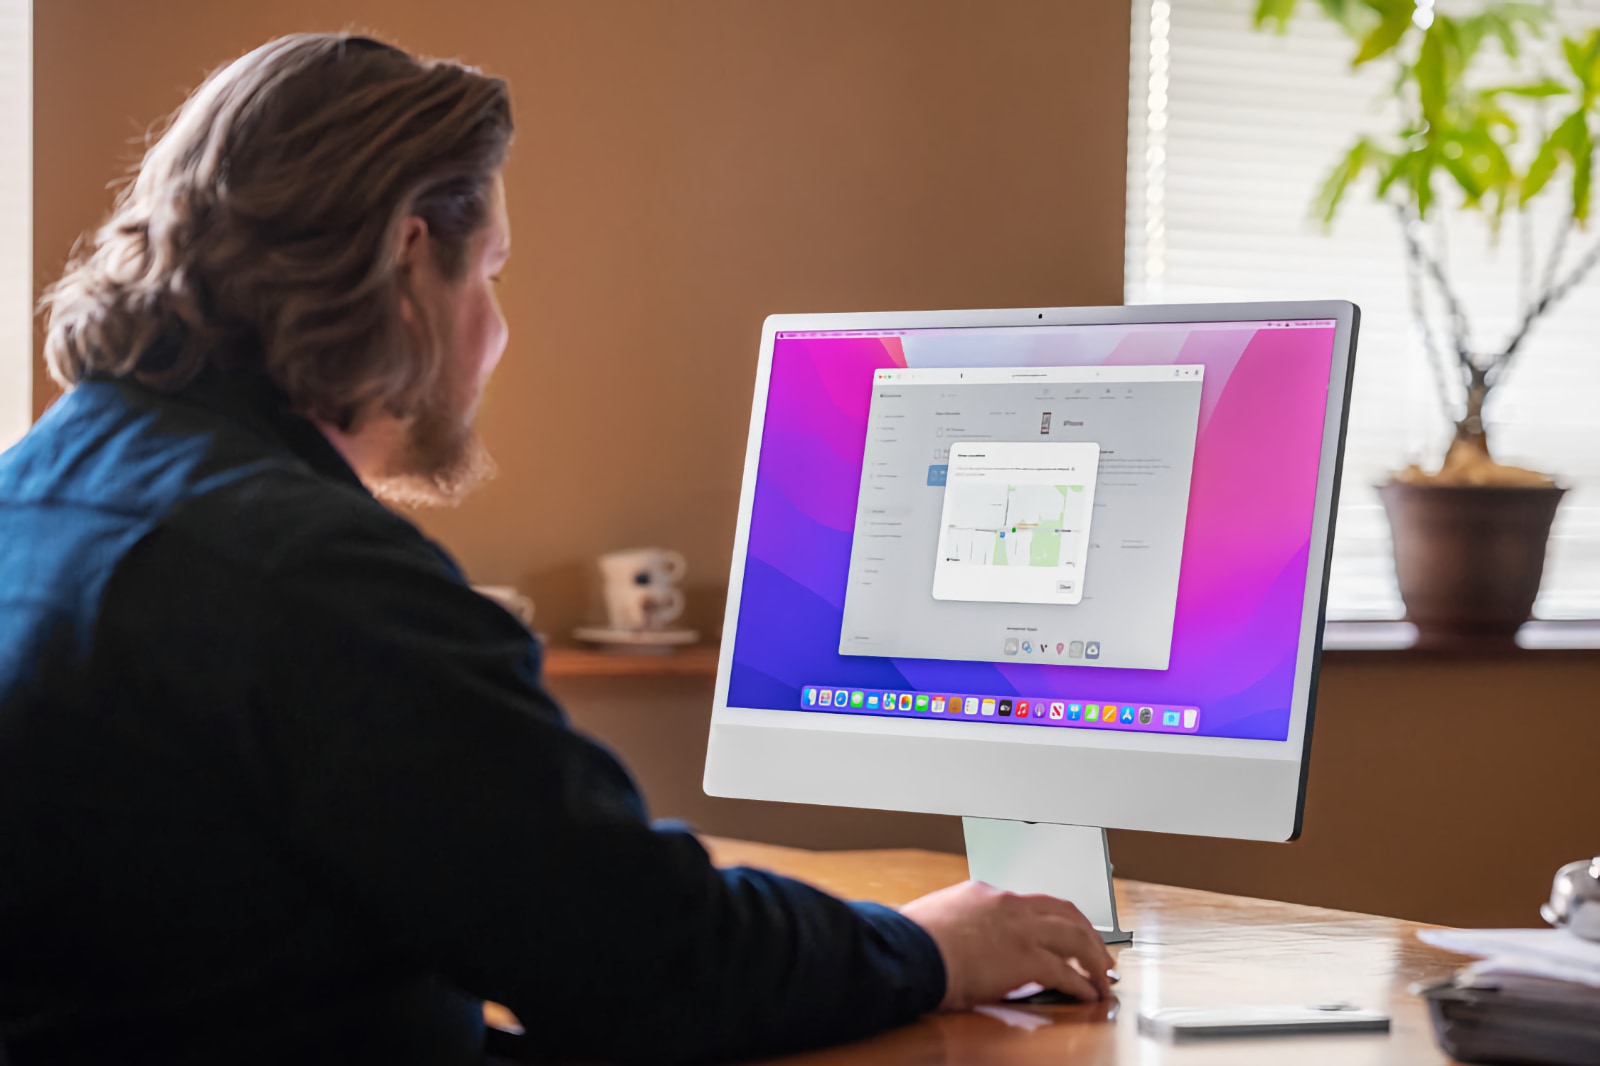 Este iMac Pro de 27 pulgadas debería haberse lanzado en 2021